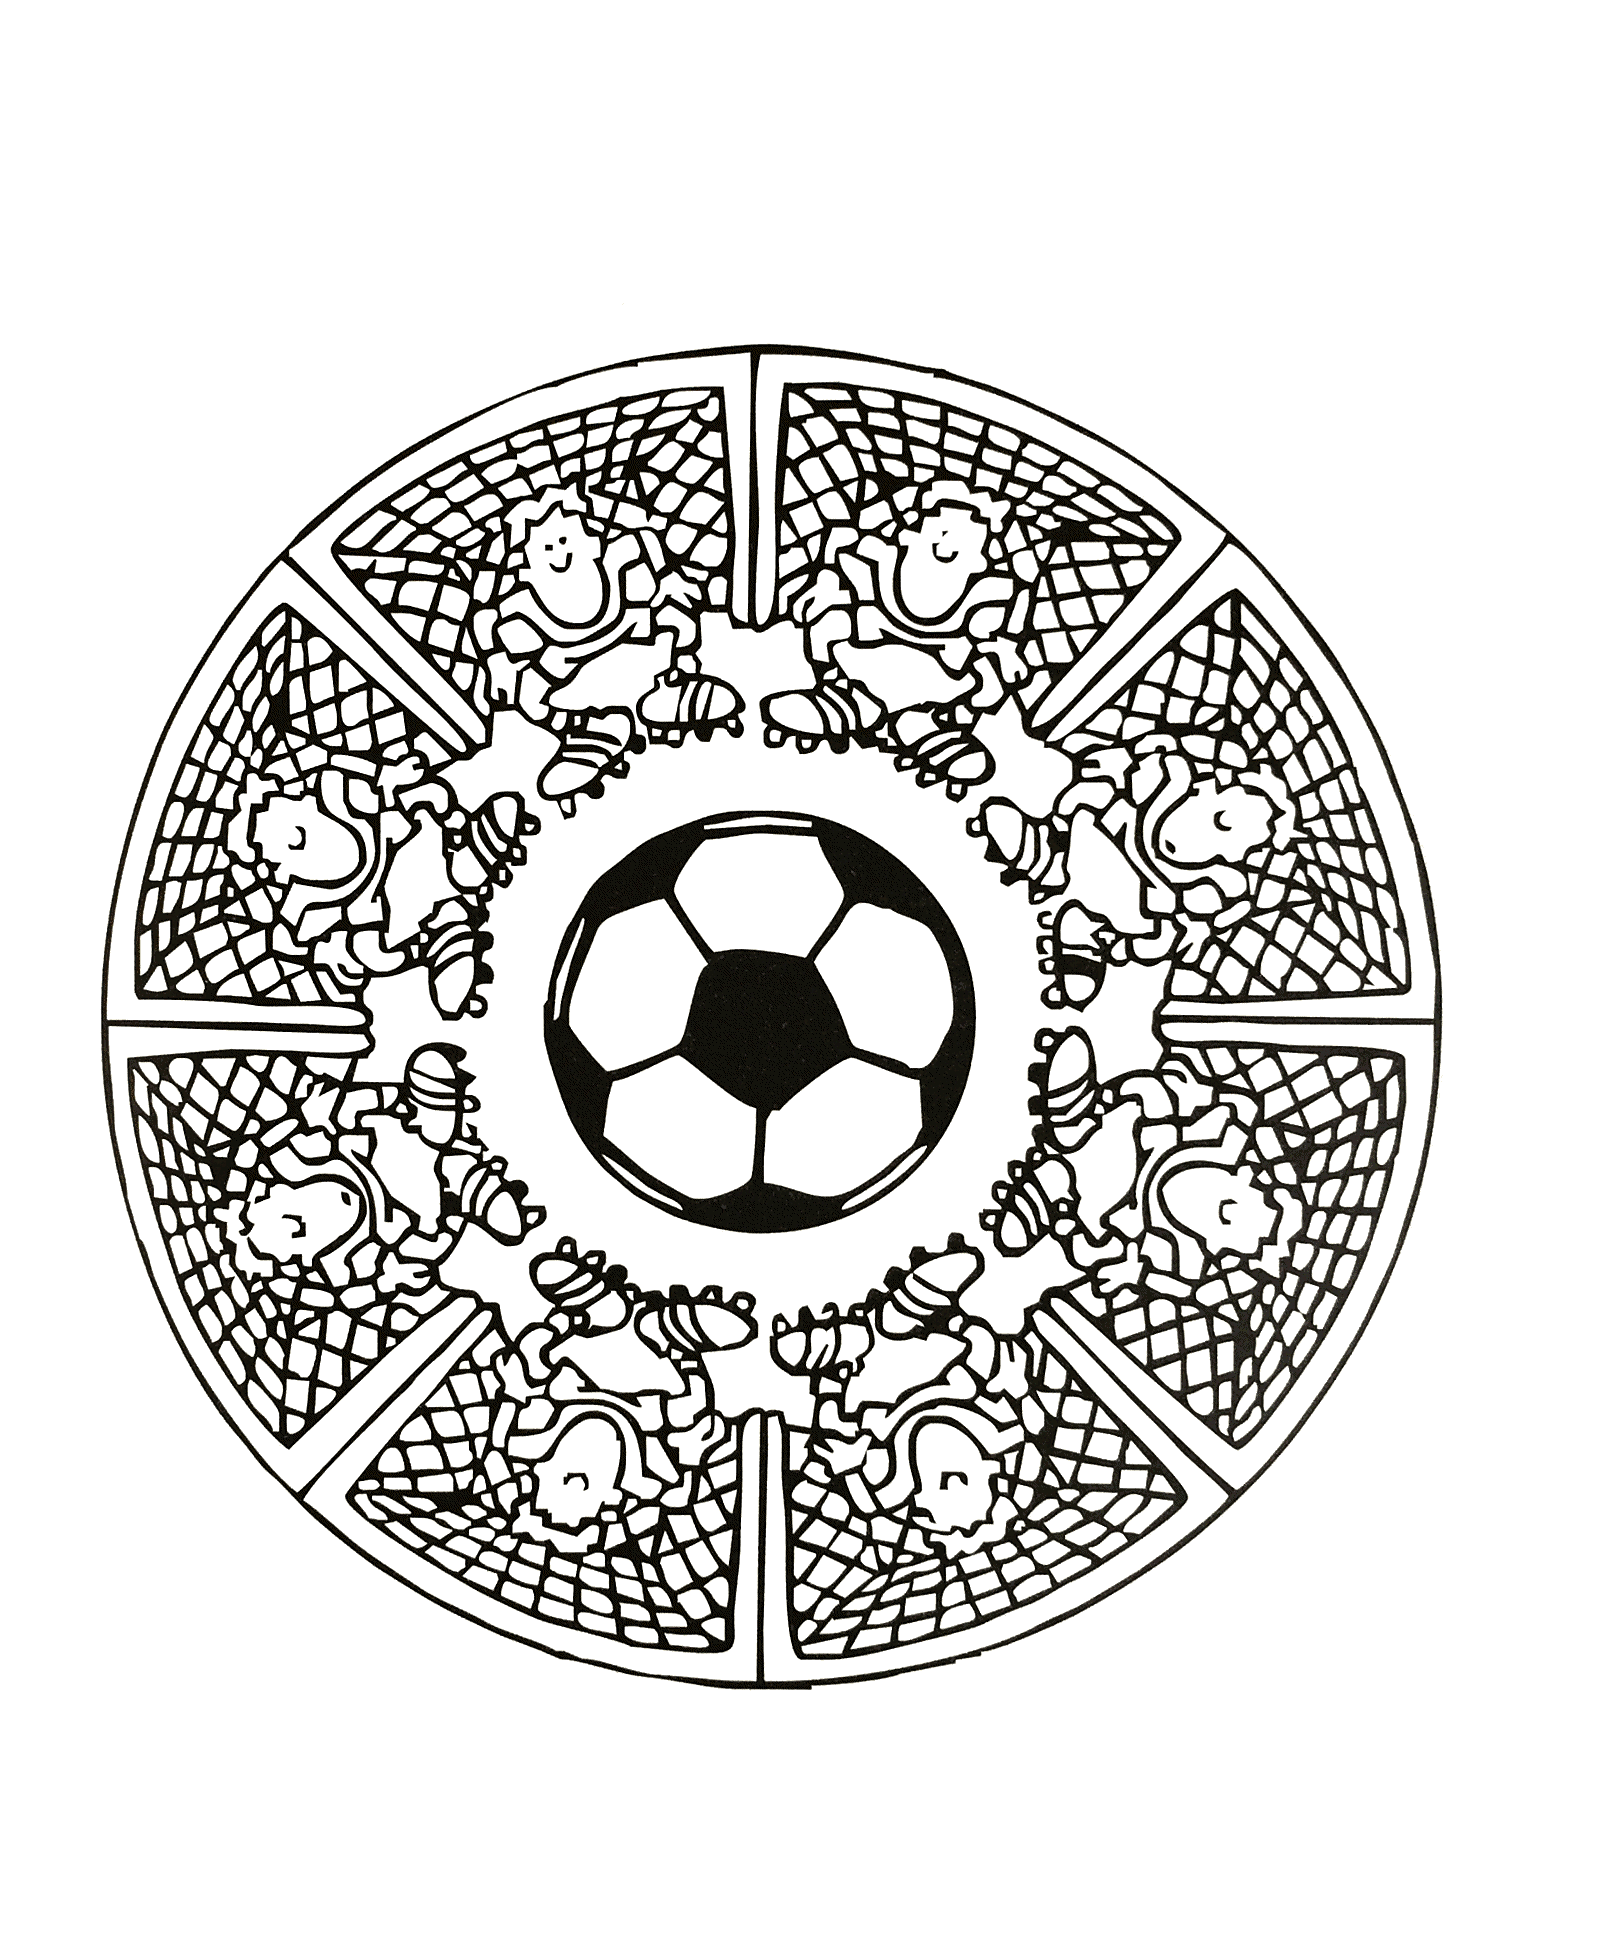 Wunderschönes Mandala in 'Fußball'-Atmosphäre, mit einer Abfolge von Fußballtoren sowie einem Torwart.